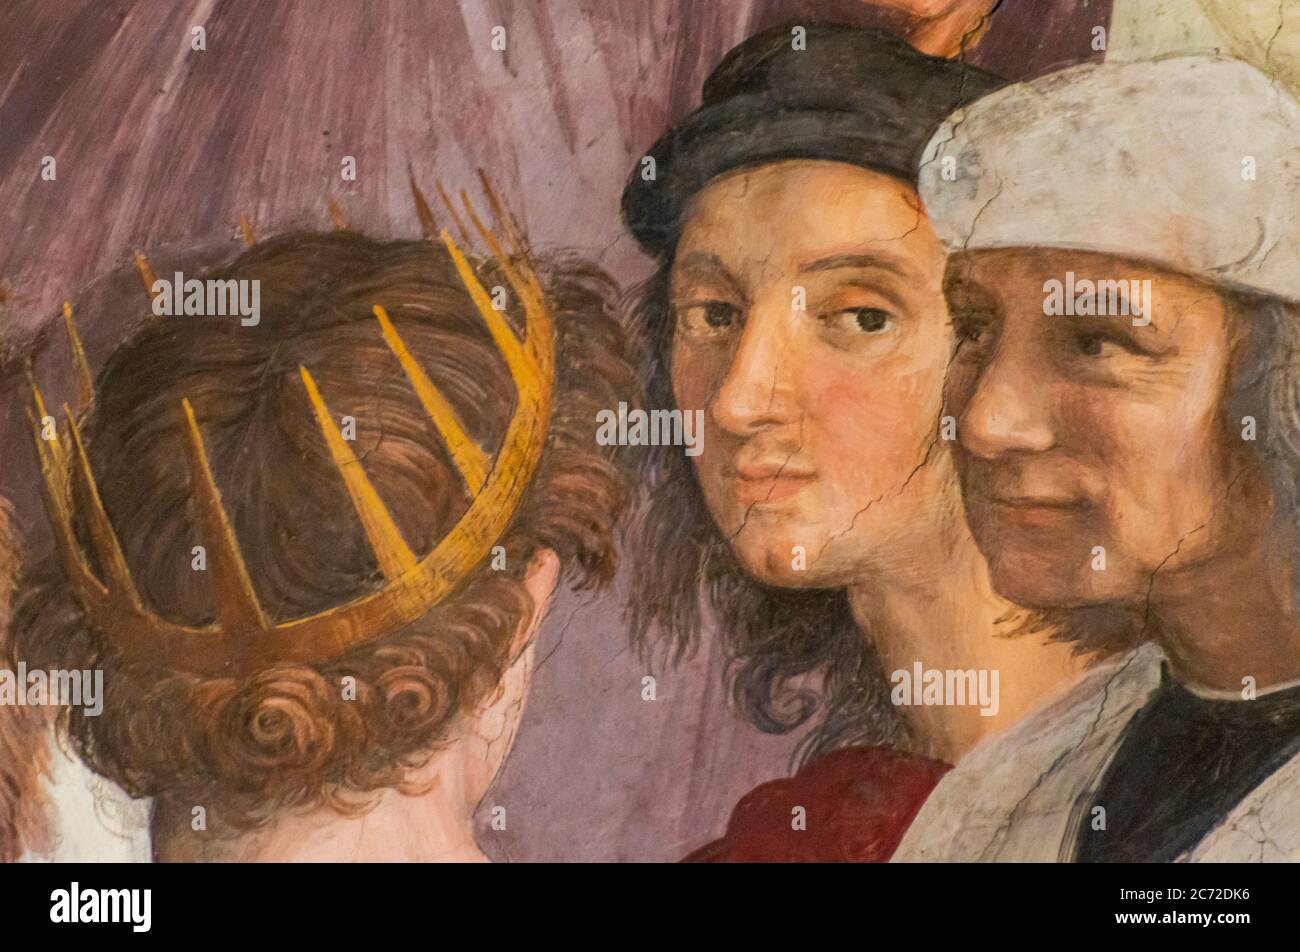 Détail de la peinture médiévale montrant les visages de deux hommes qui parle à un roi portant une couronne Banque D'Images